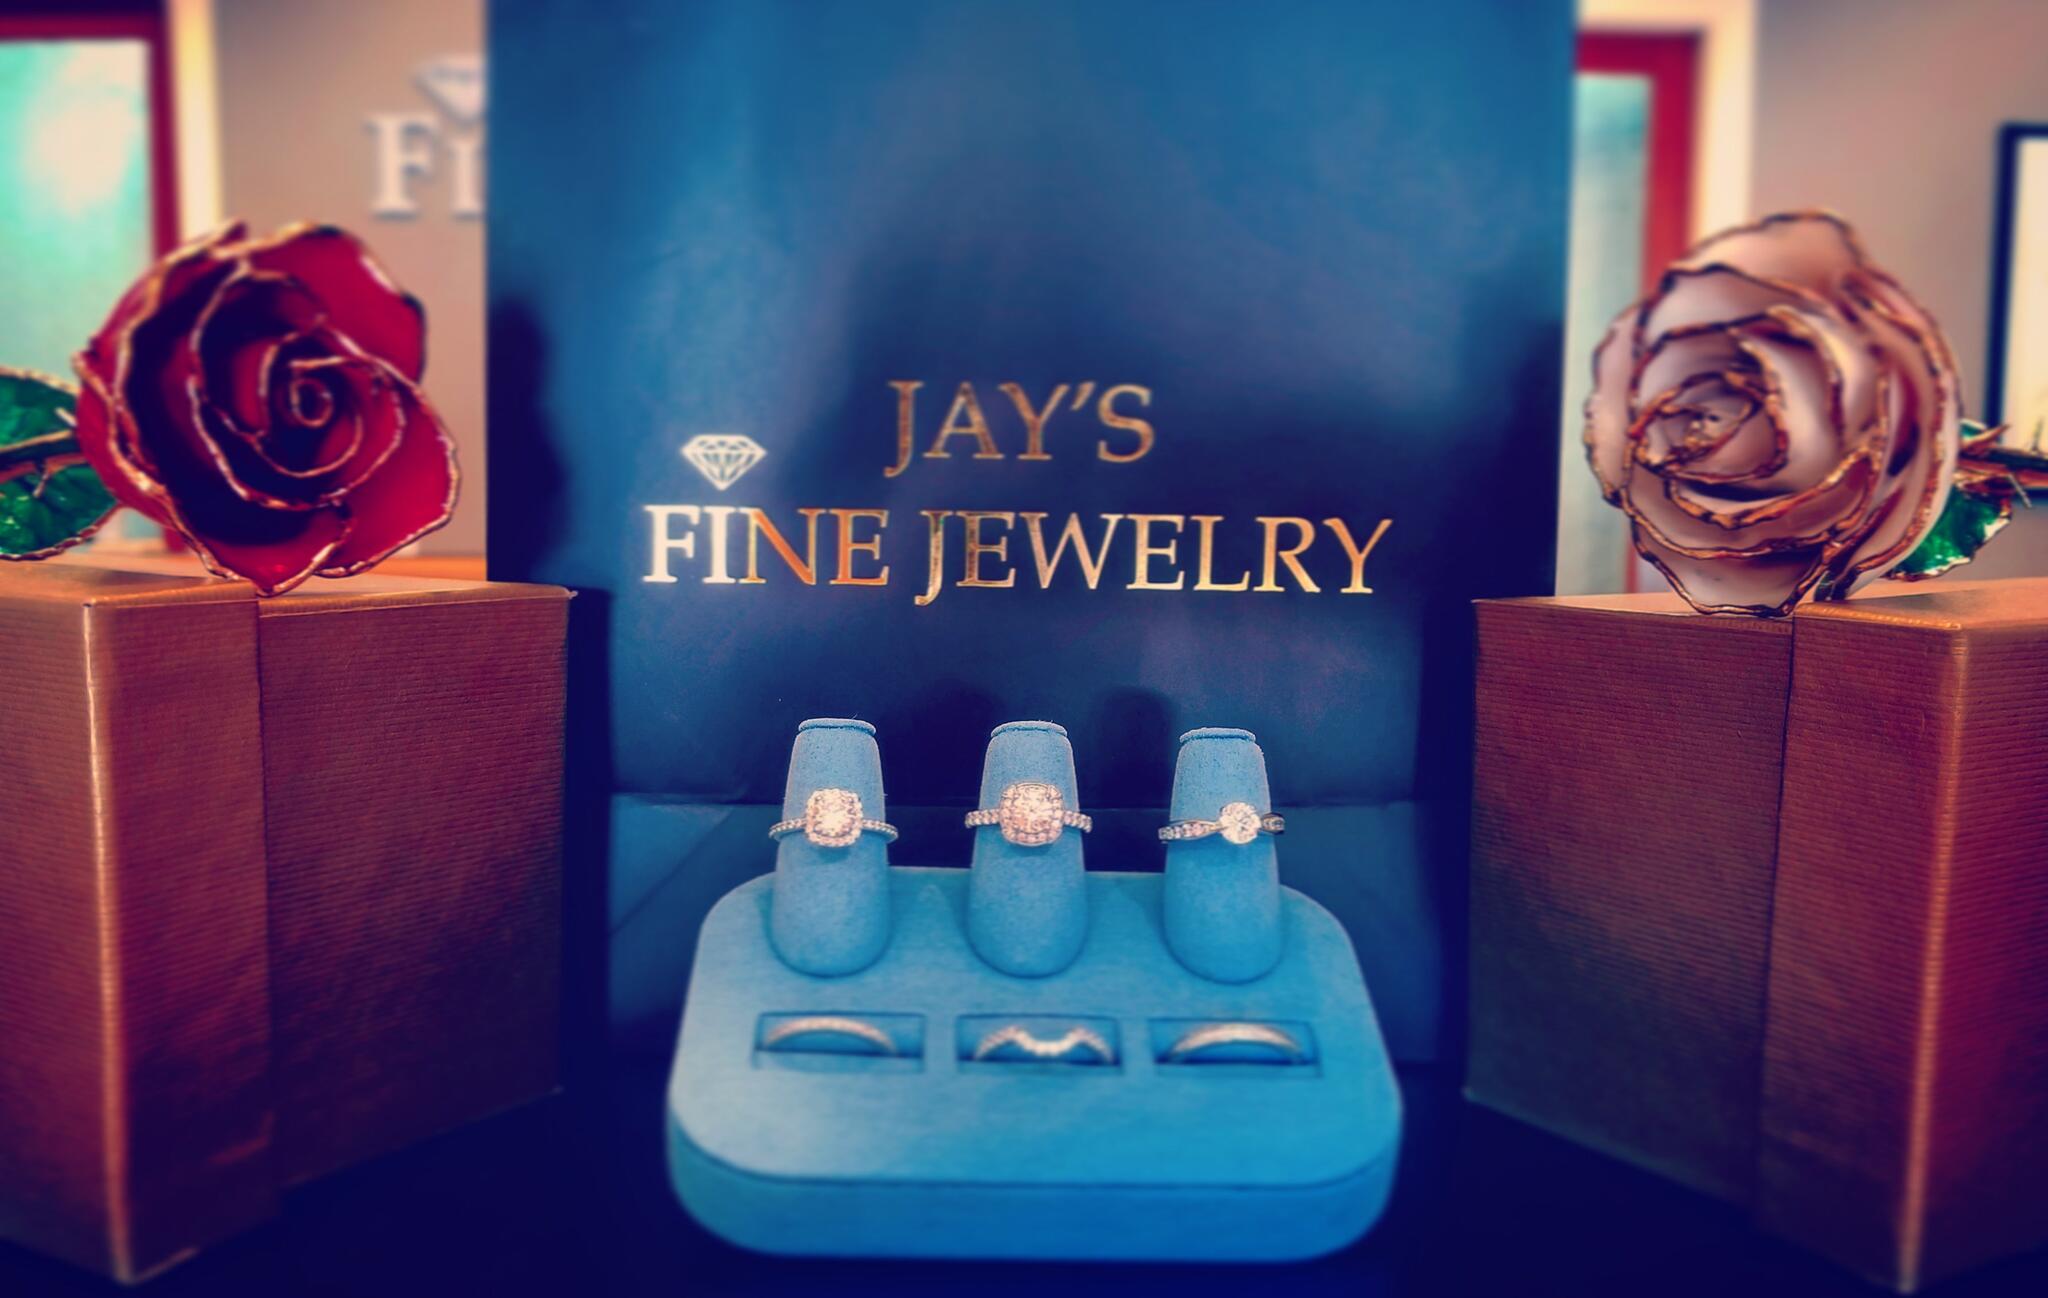 Jay's Fine Jewelry